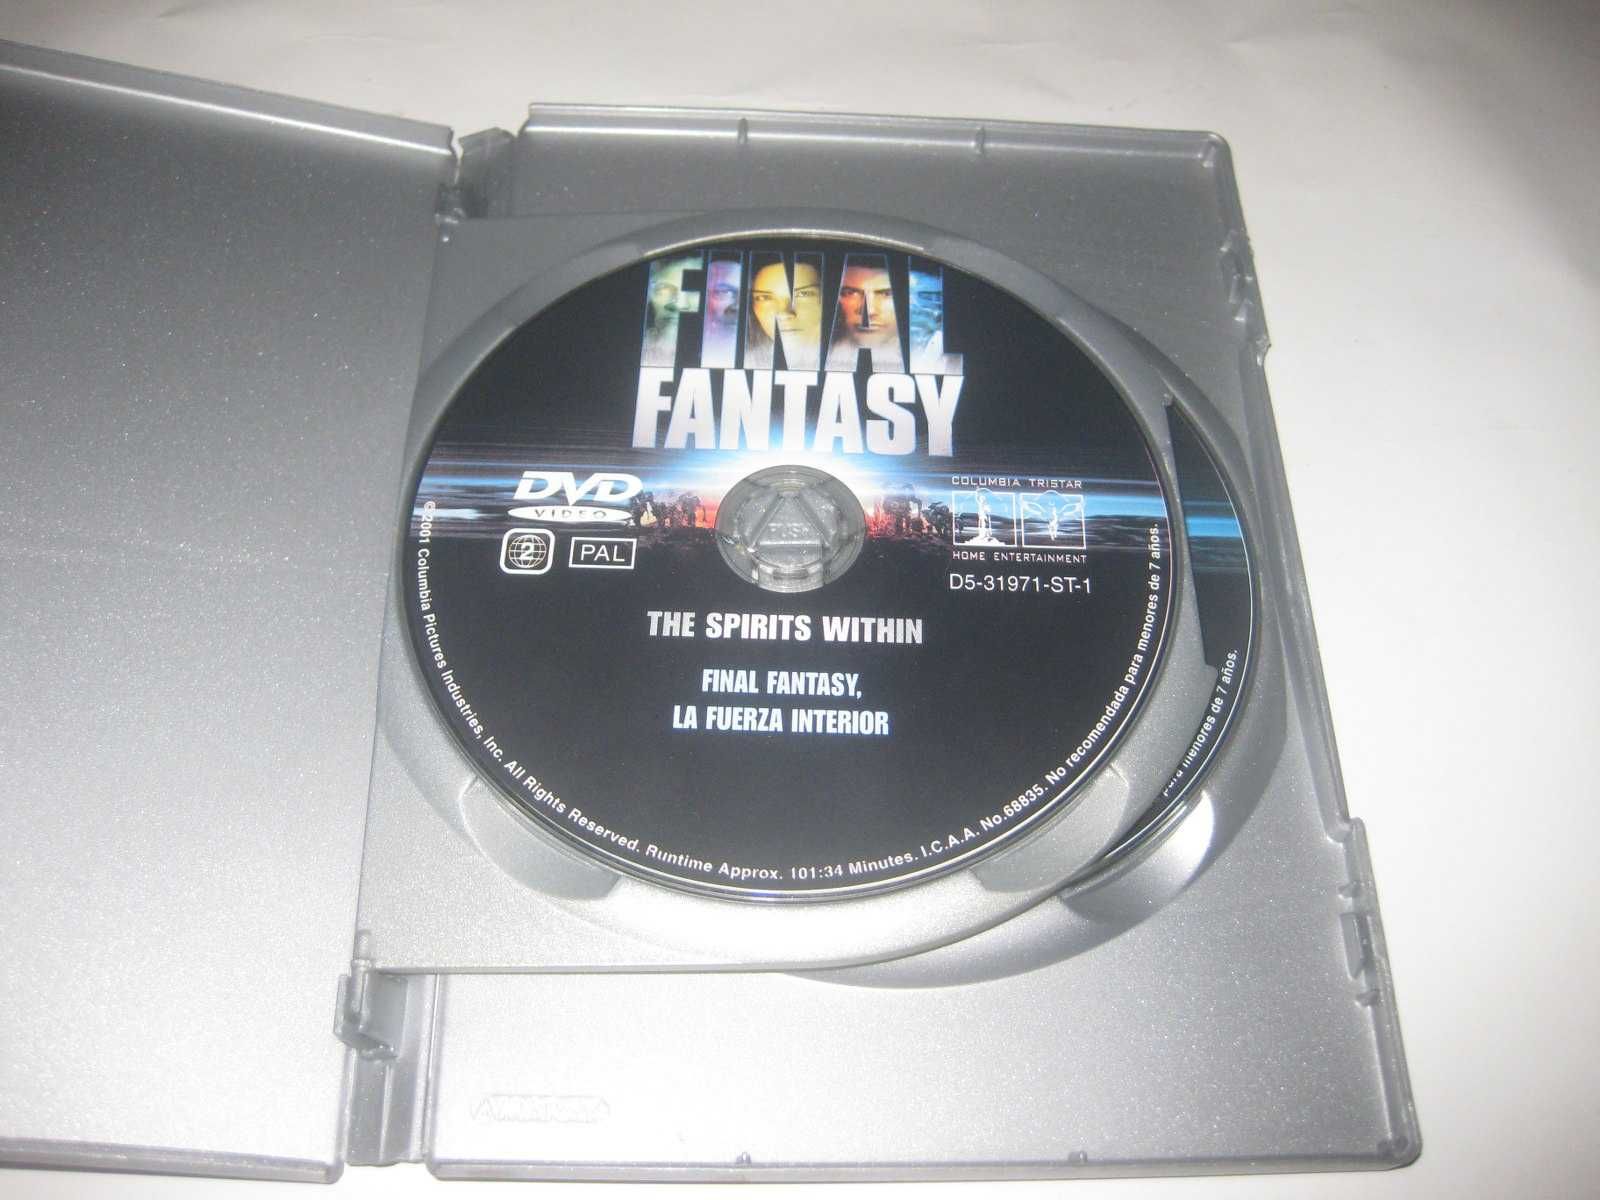 "Final Fantasy" numa Edição Especial com 2 DVDs